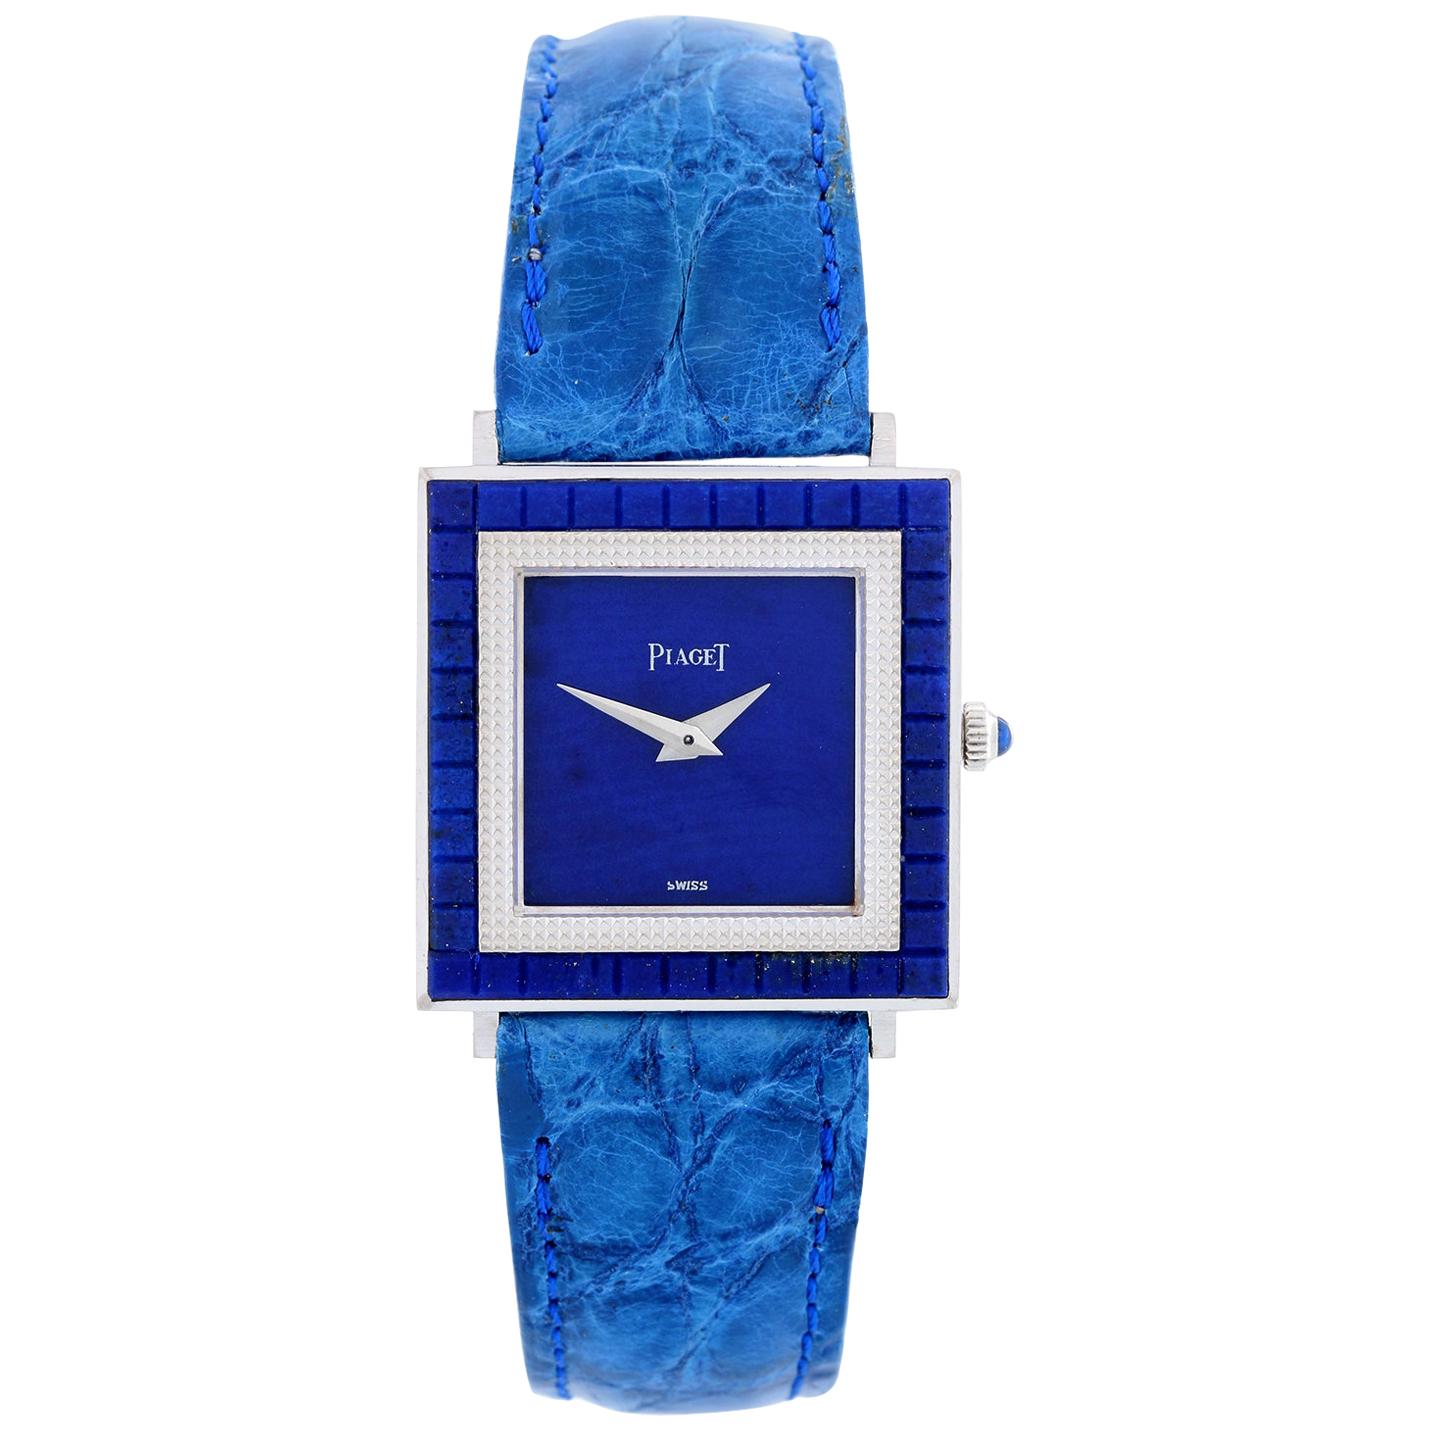 Piaget White Gold Lapis Lazuli Dial Watch